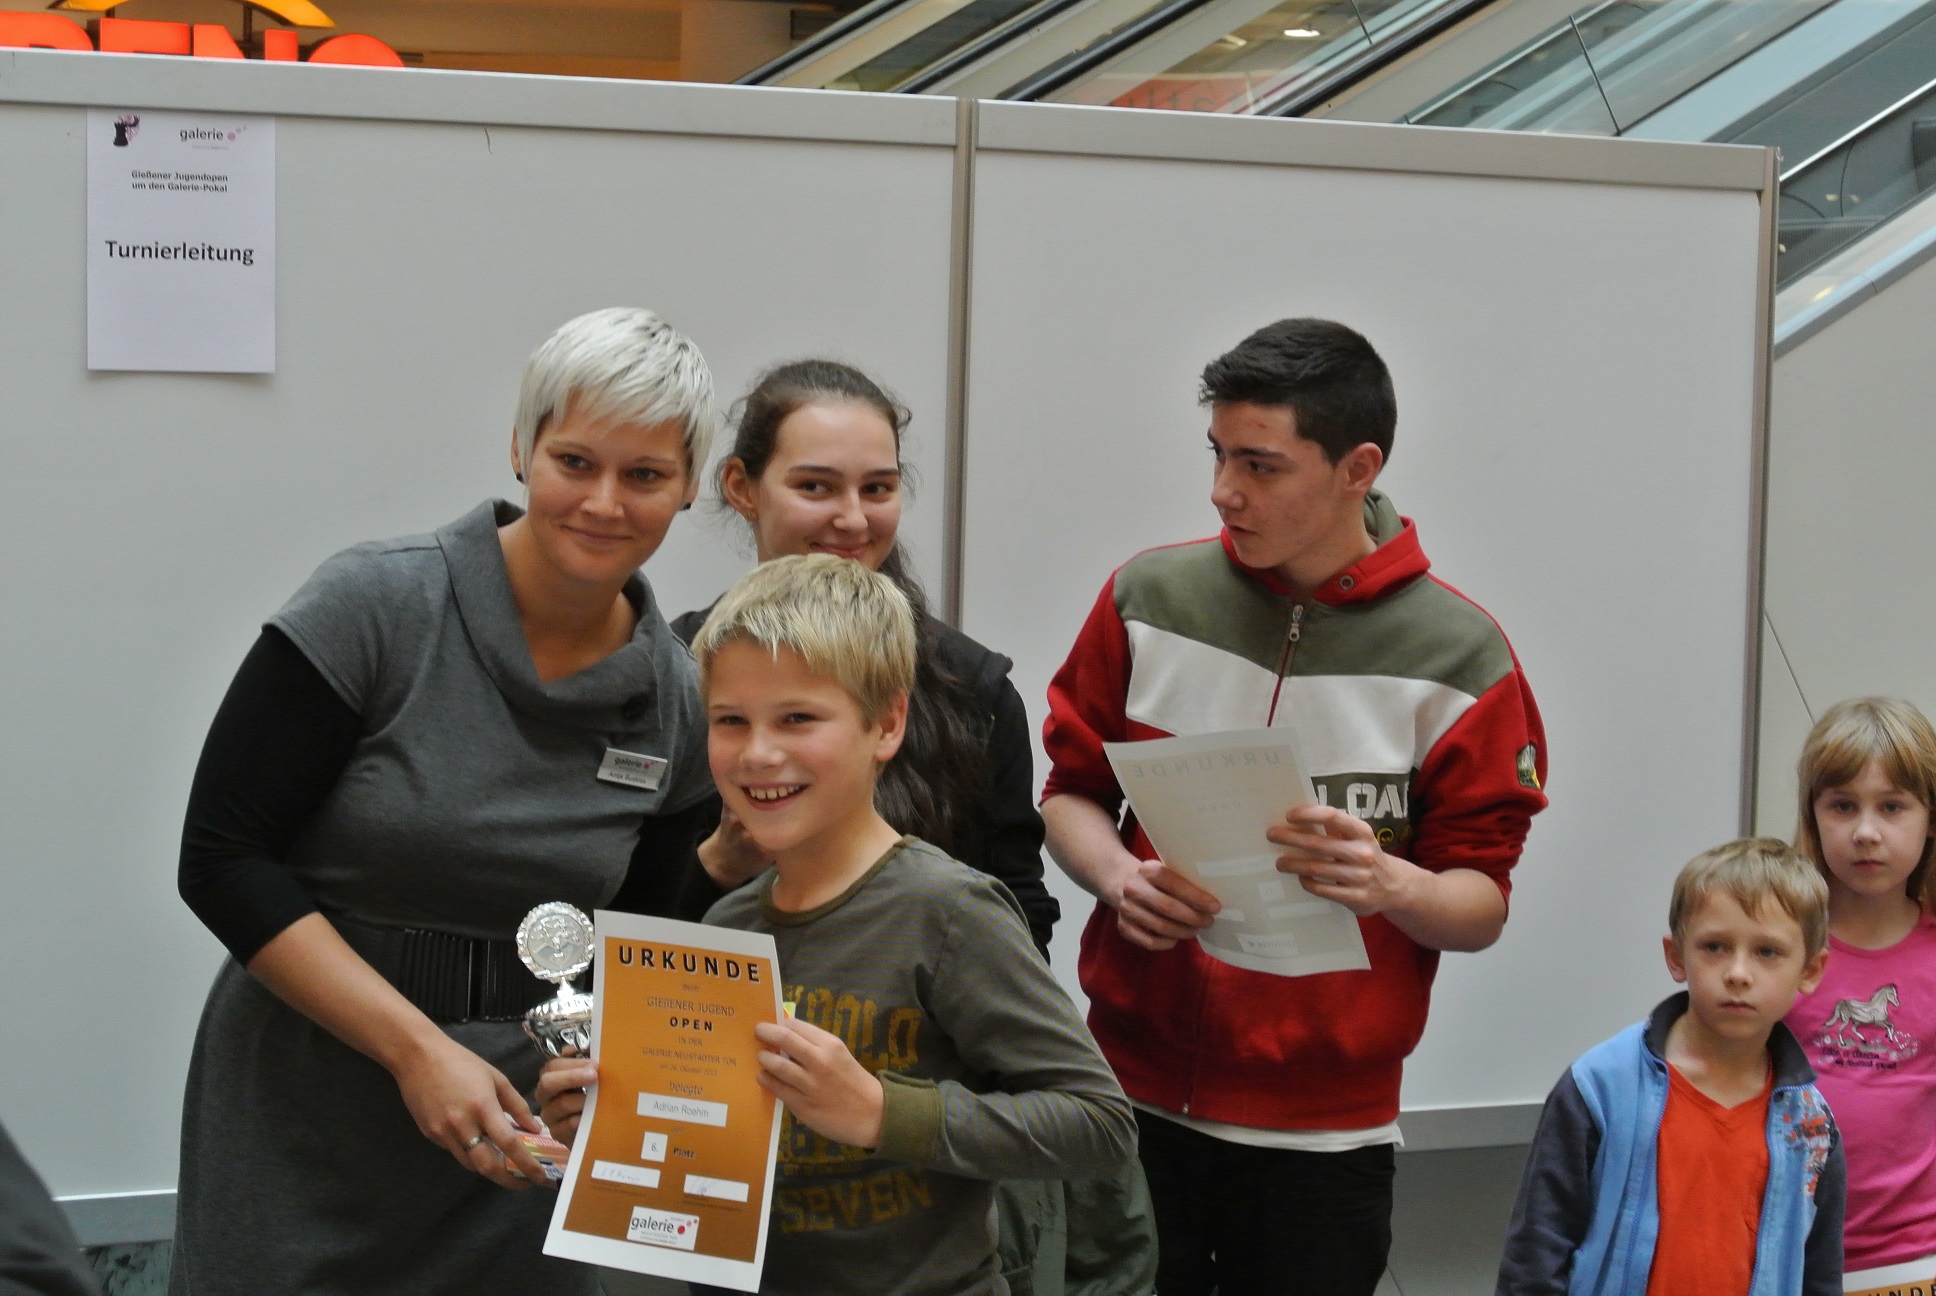 Adrian Rhm (vorne im Bild) gewinnt das U10-Turnier der Galeria Kaufhof und zeigt stolz seine Urkunde